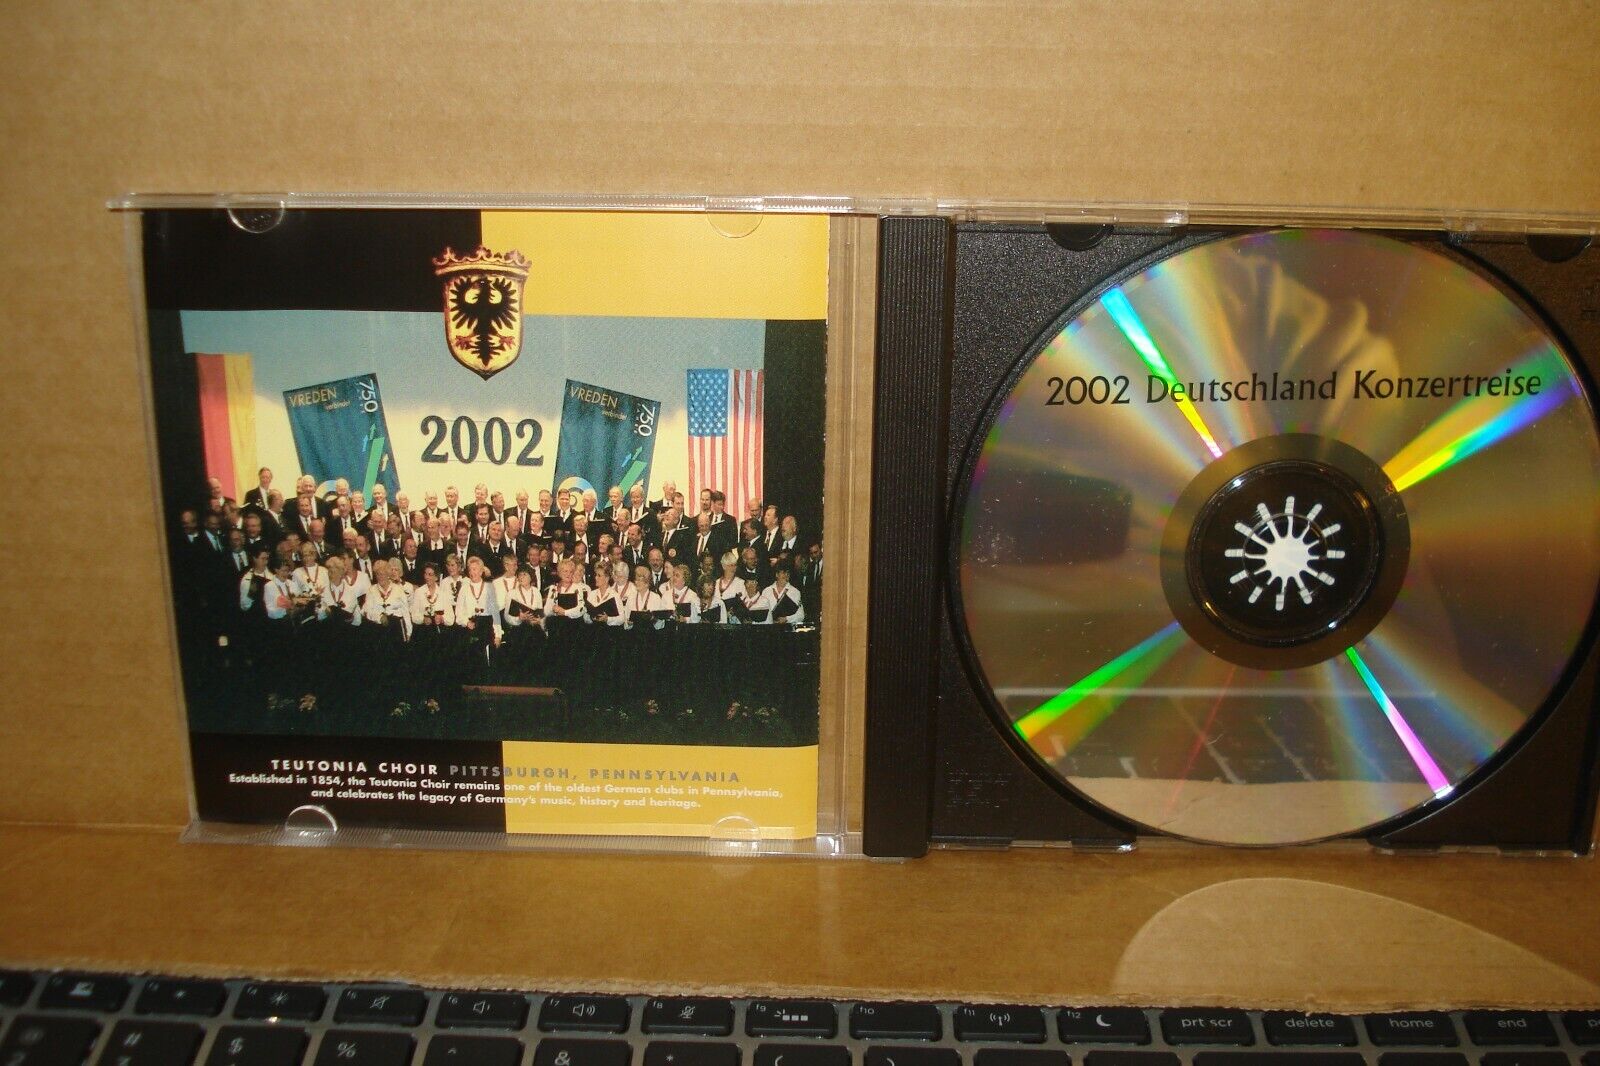 Teutonia Choir - Deutsche Konzertreise 2002 Без бренда - фотография #3